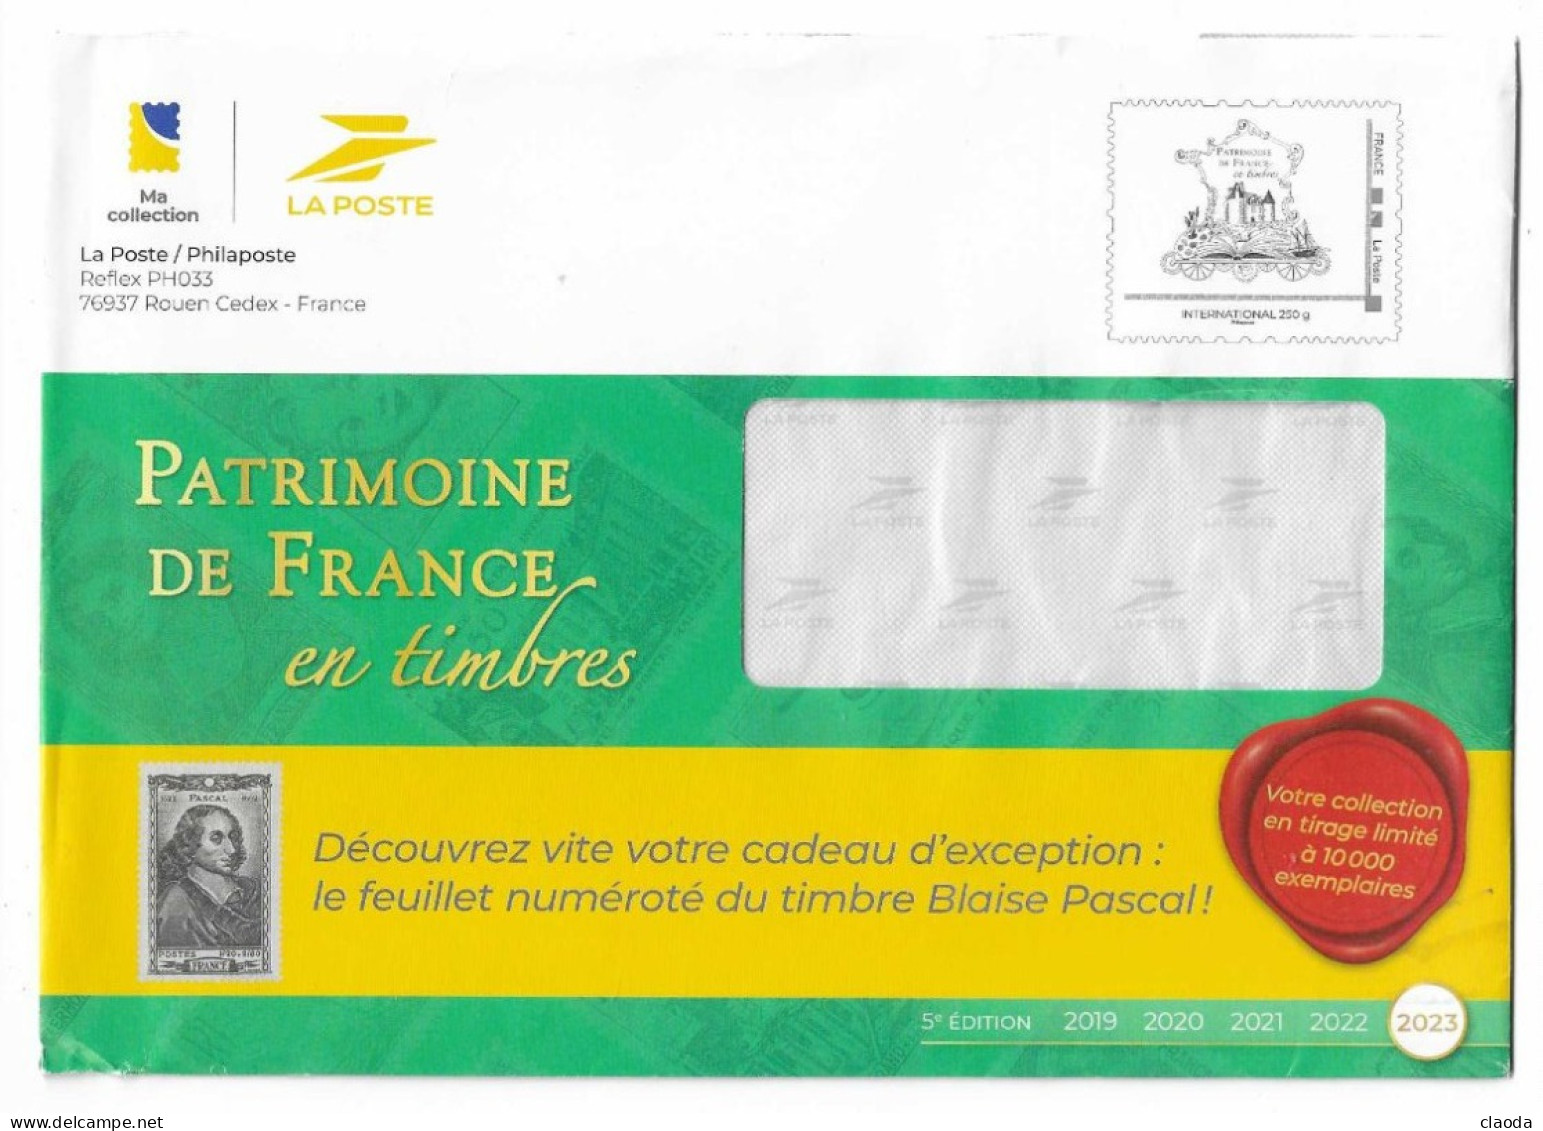 18003 - PAP TSC La Poste Phil@poste  - PATRIMOINE DE FRANCE 2023 (TP Patrimoine De France  )  International  250g) - Prêts-à-poster:Stamped On Demand & Semi-official Overprinting (1995-...)